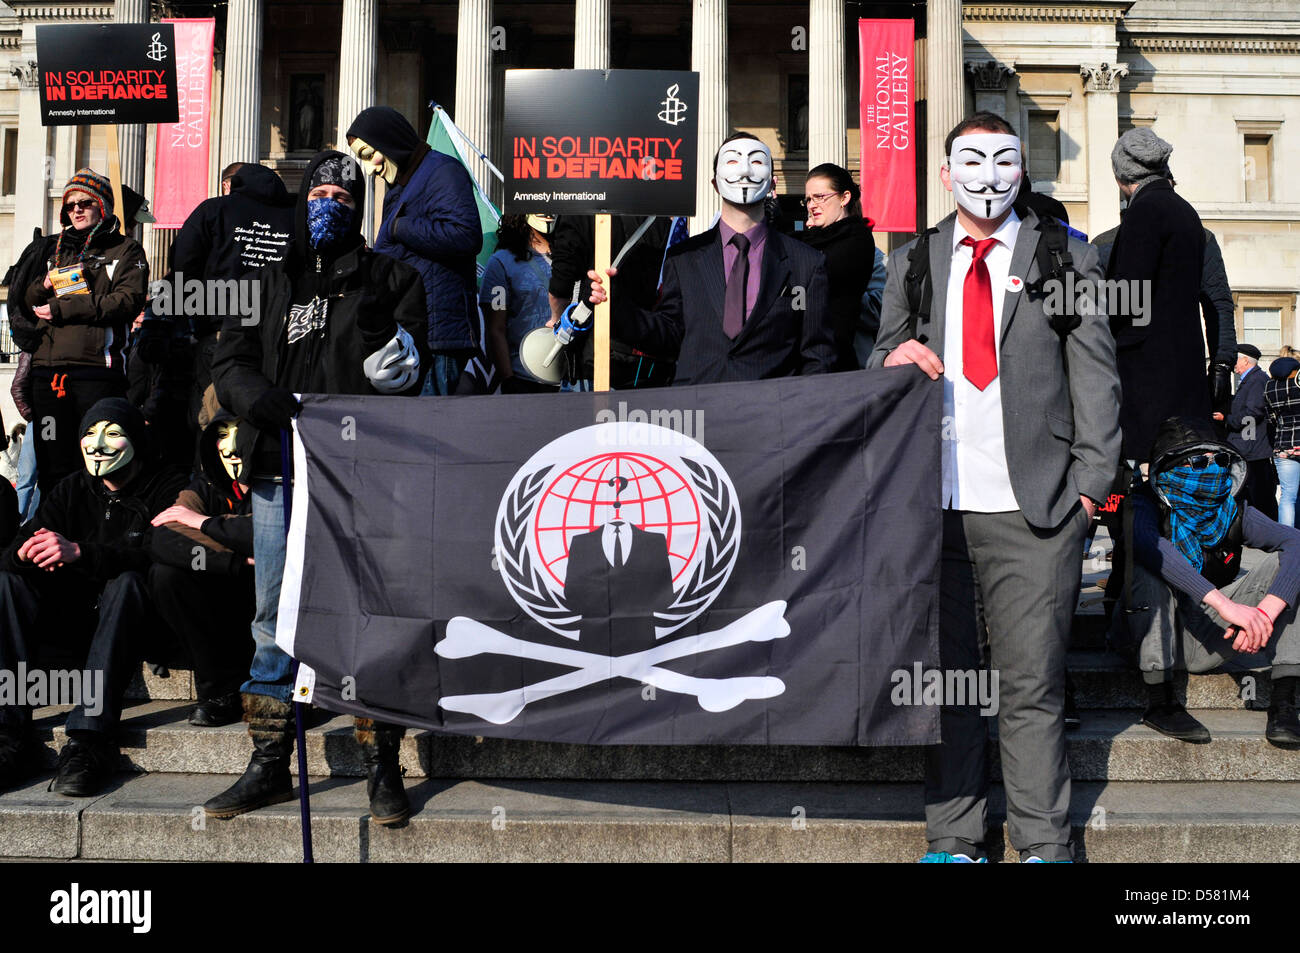 Eine Gruppe von Demonstranten, einige von ihnen tragen anonyme Masken auf einer Kundgebung auf dem Trafalgar Square, London, UK. Stockfoto